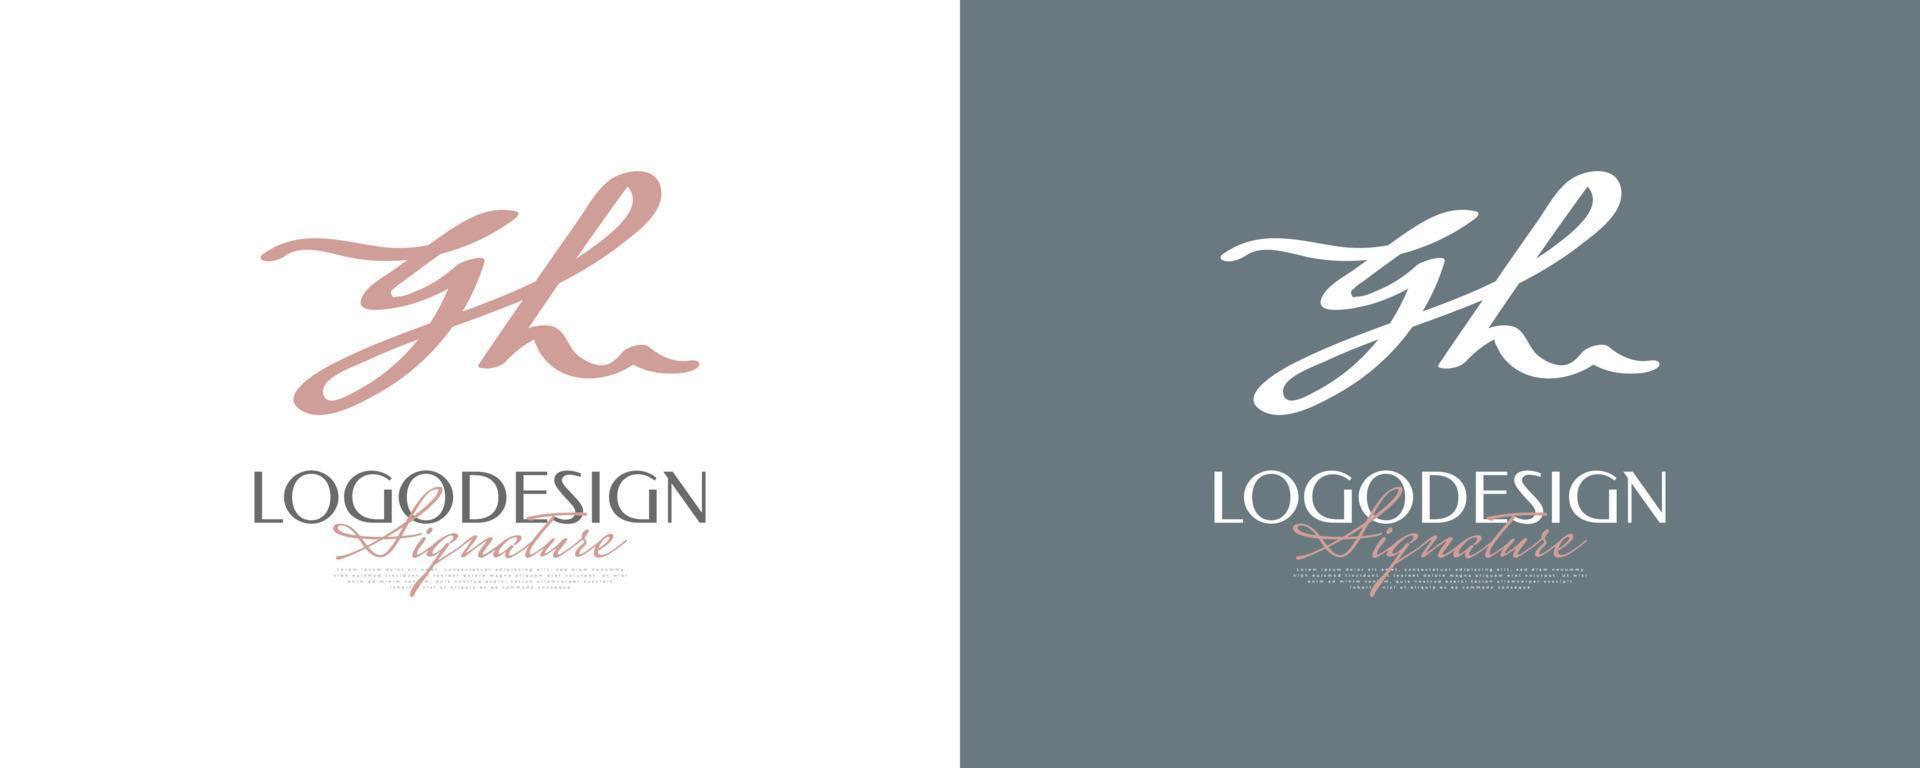 anfängliches g- und h-logo-design im eleganten und minimalistischen handschriftstil. gh-signaturlogo oder symbol für hochzeit, mode, schmuck, boutique und geschäftsidentität vektor